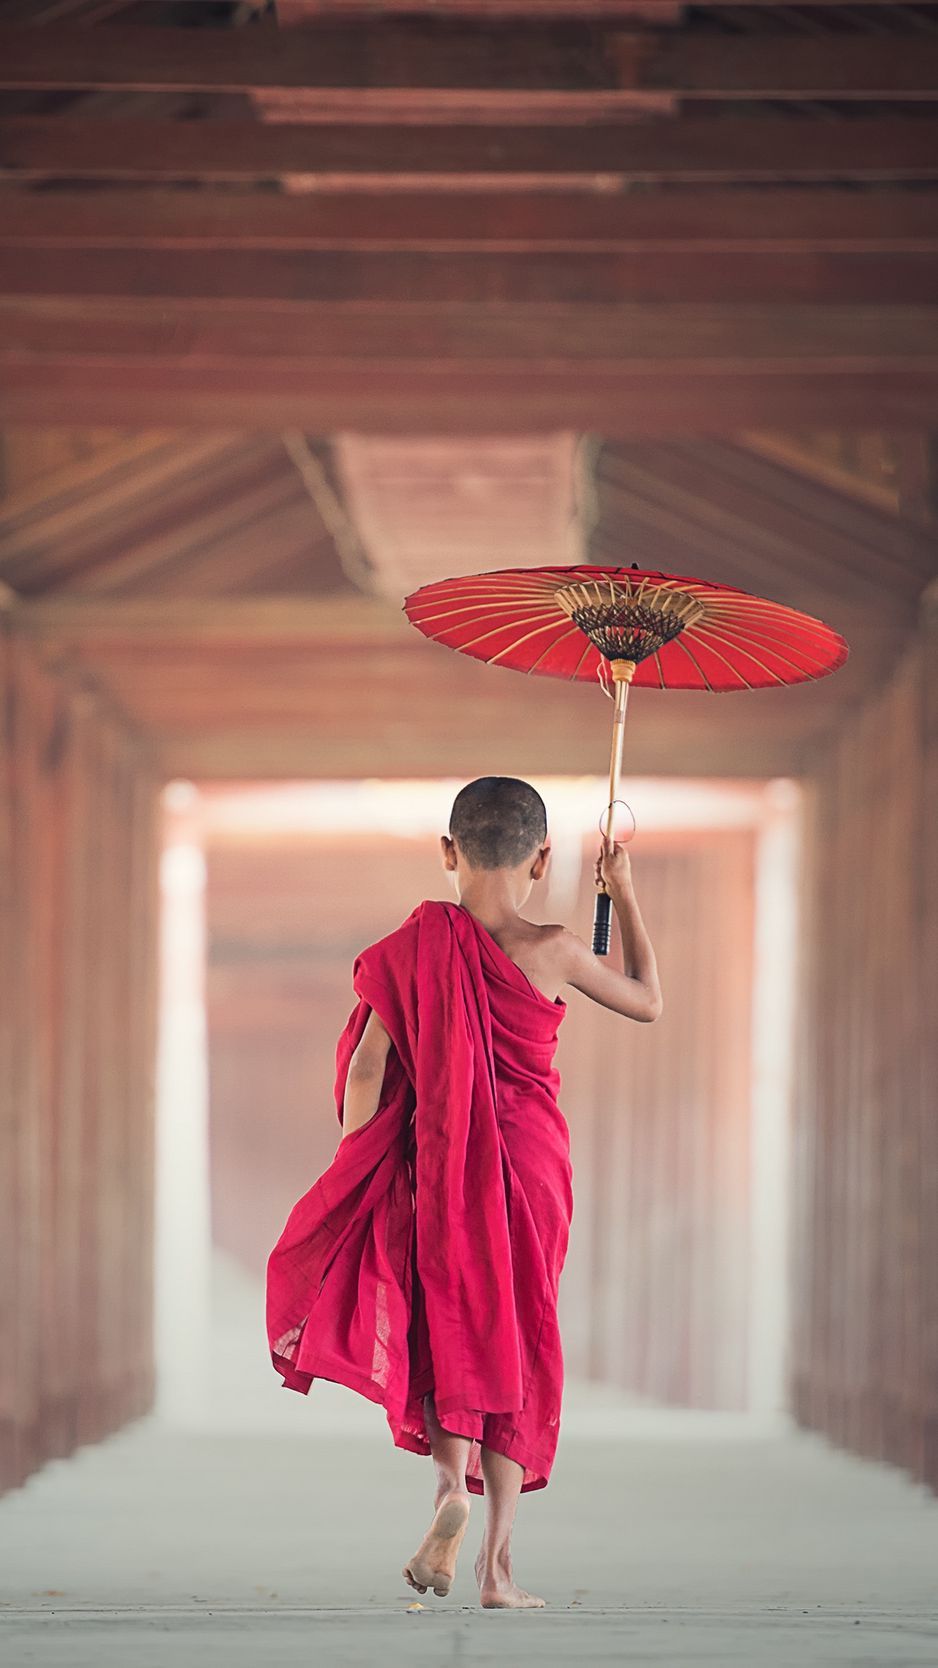 Download wallpaper 938x1668 boy, monk, child, umbrella, buddhism